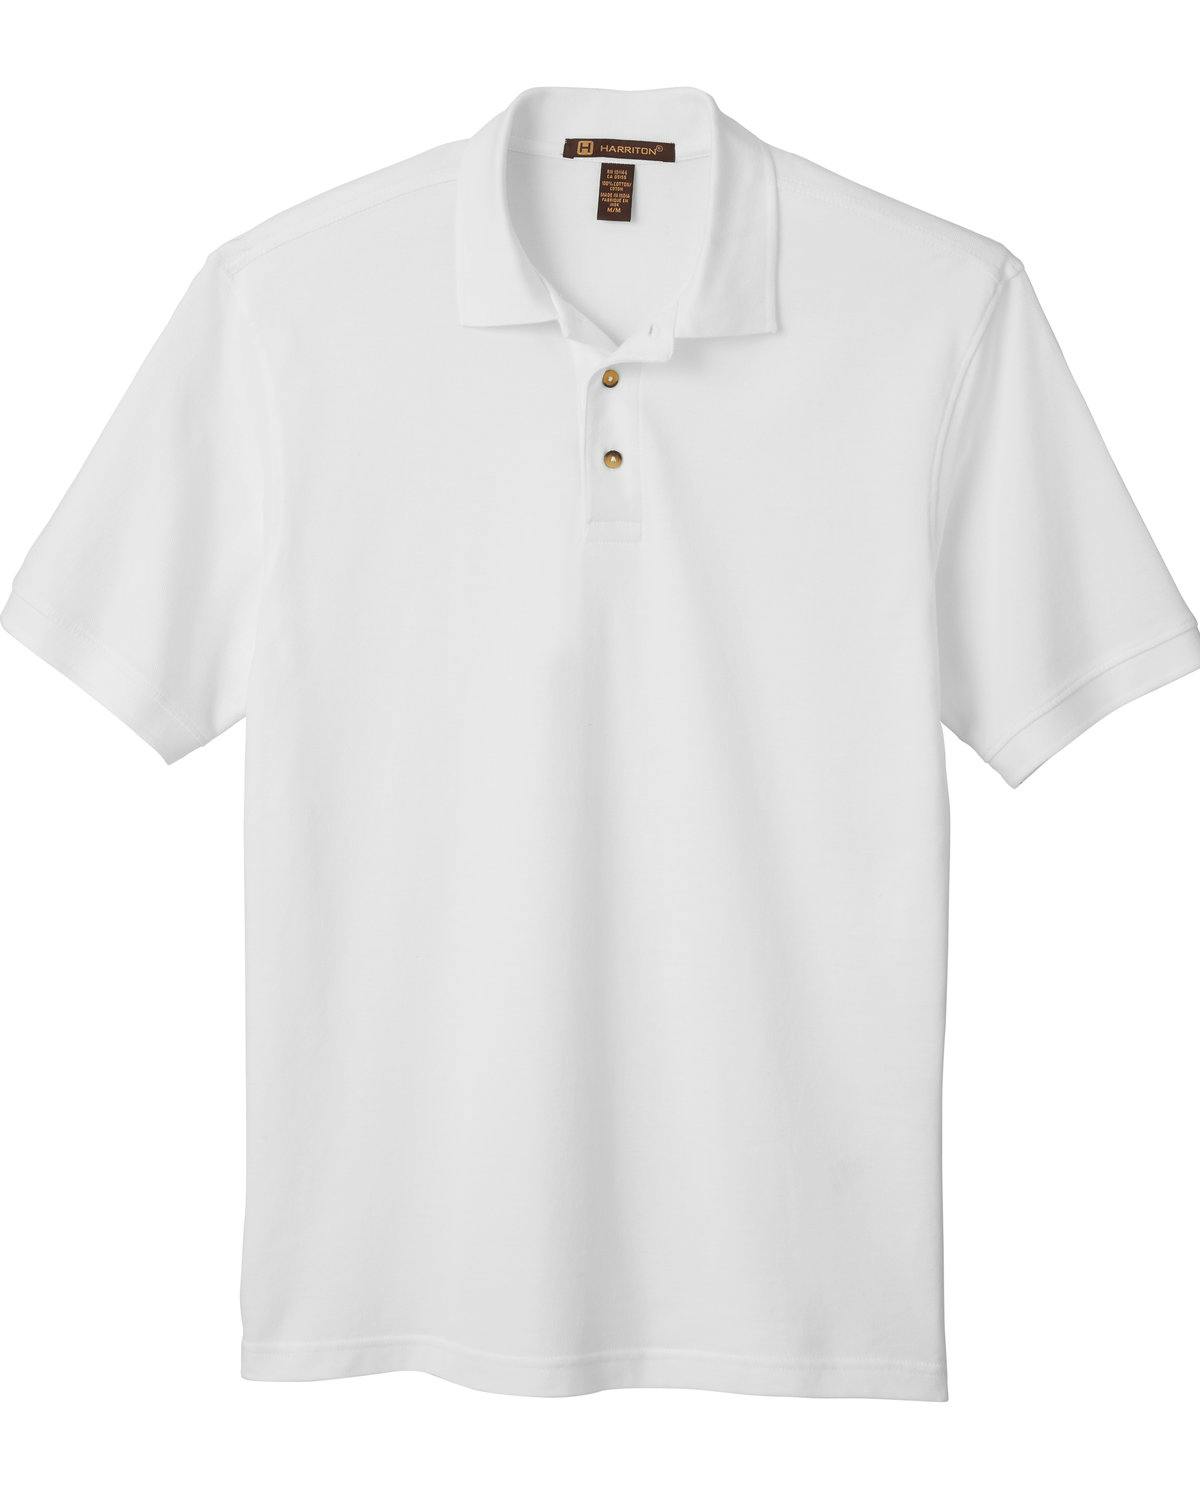 Image for Men's 6 oz. Ringspun Cotton Piqué Short-Sleeve Polo